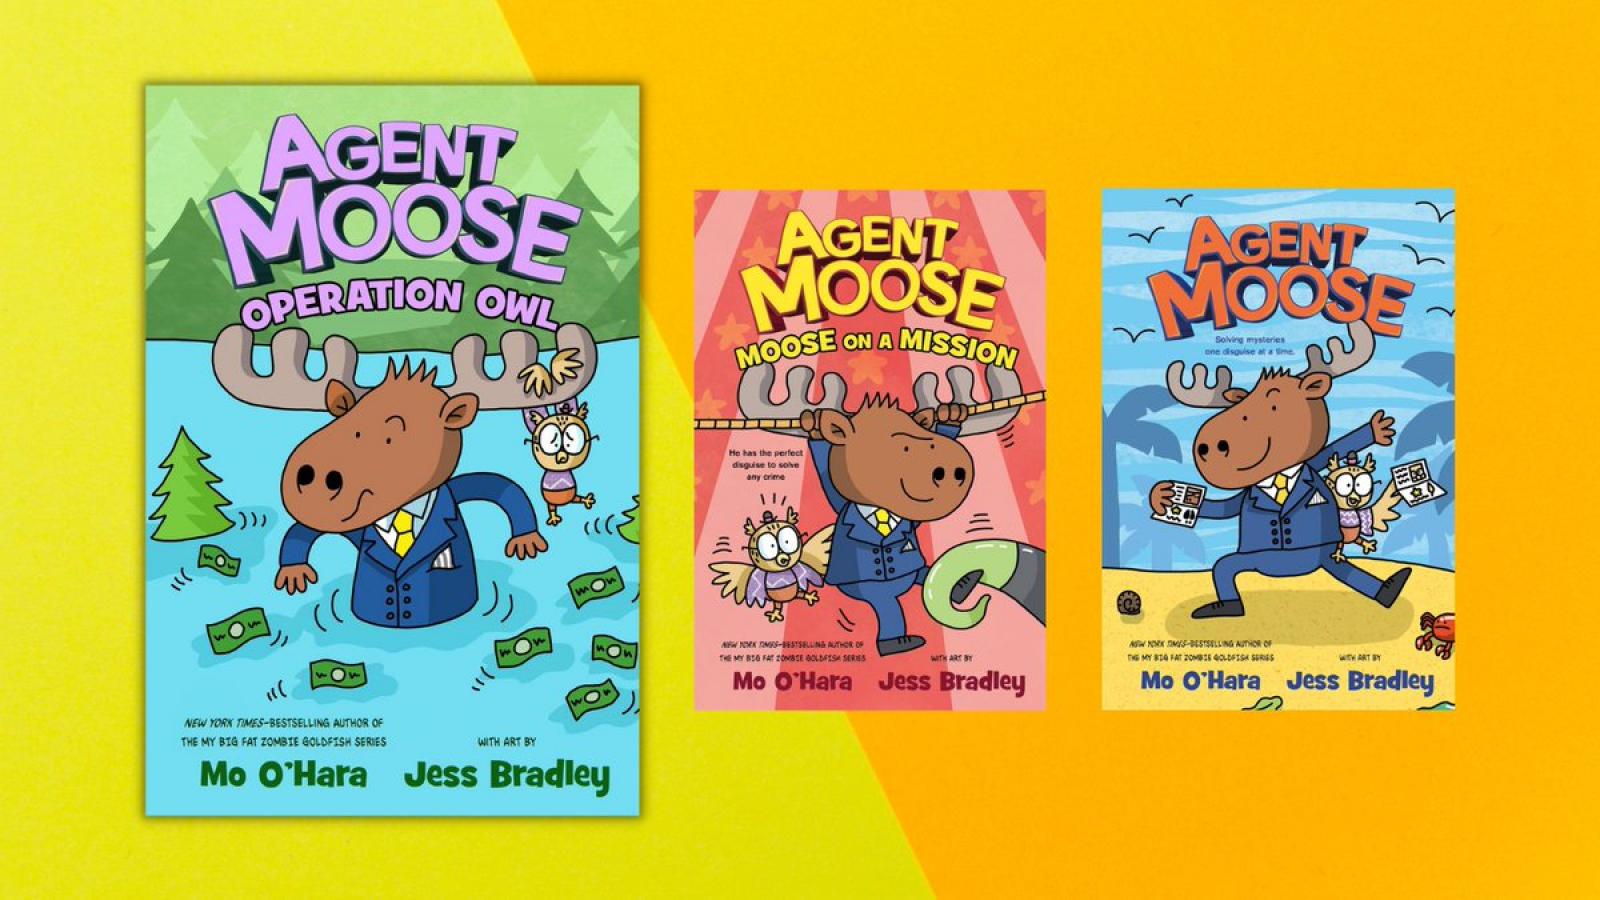 Agent Moose series by Mo O'Hara